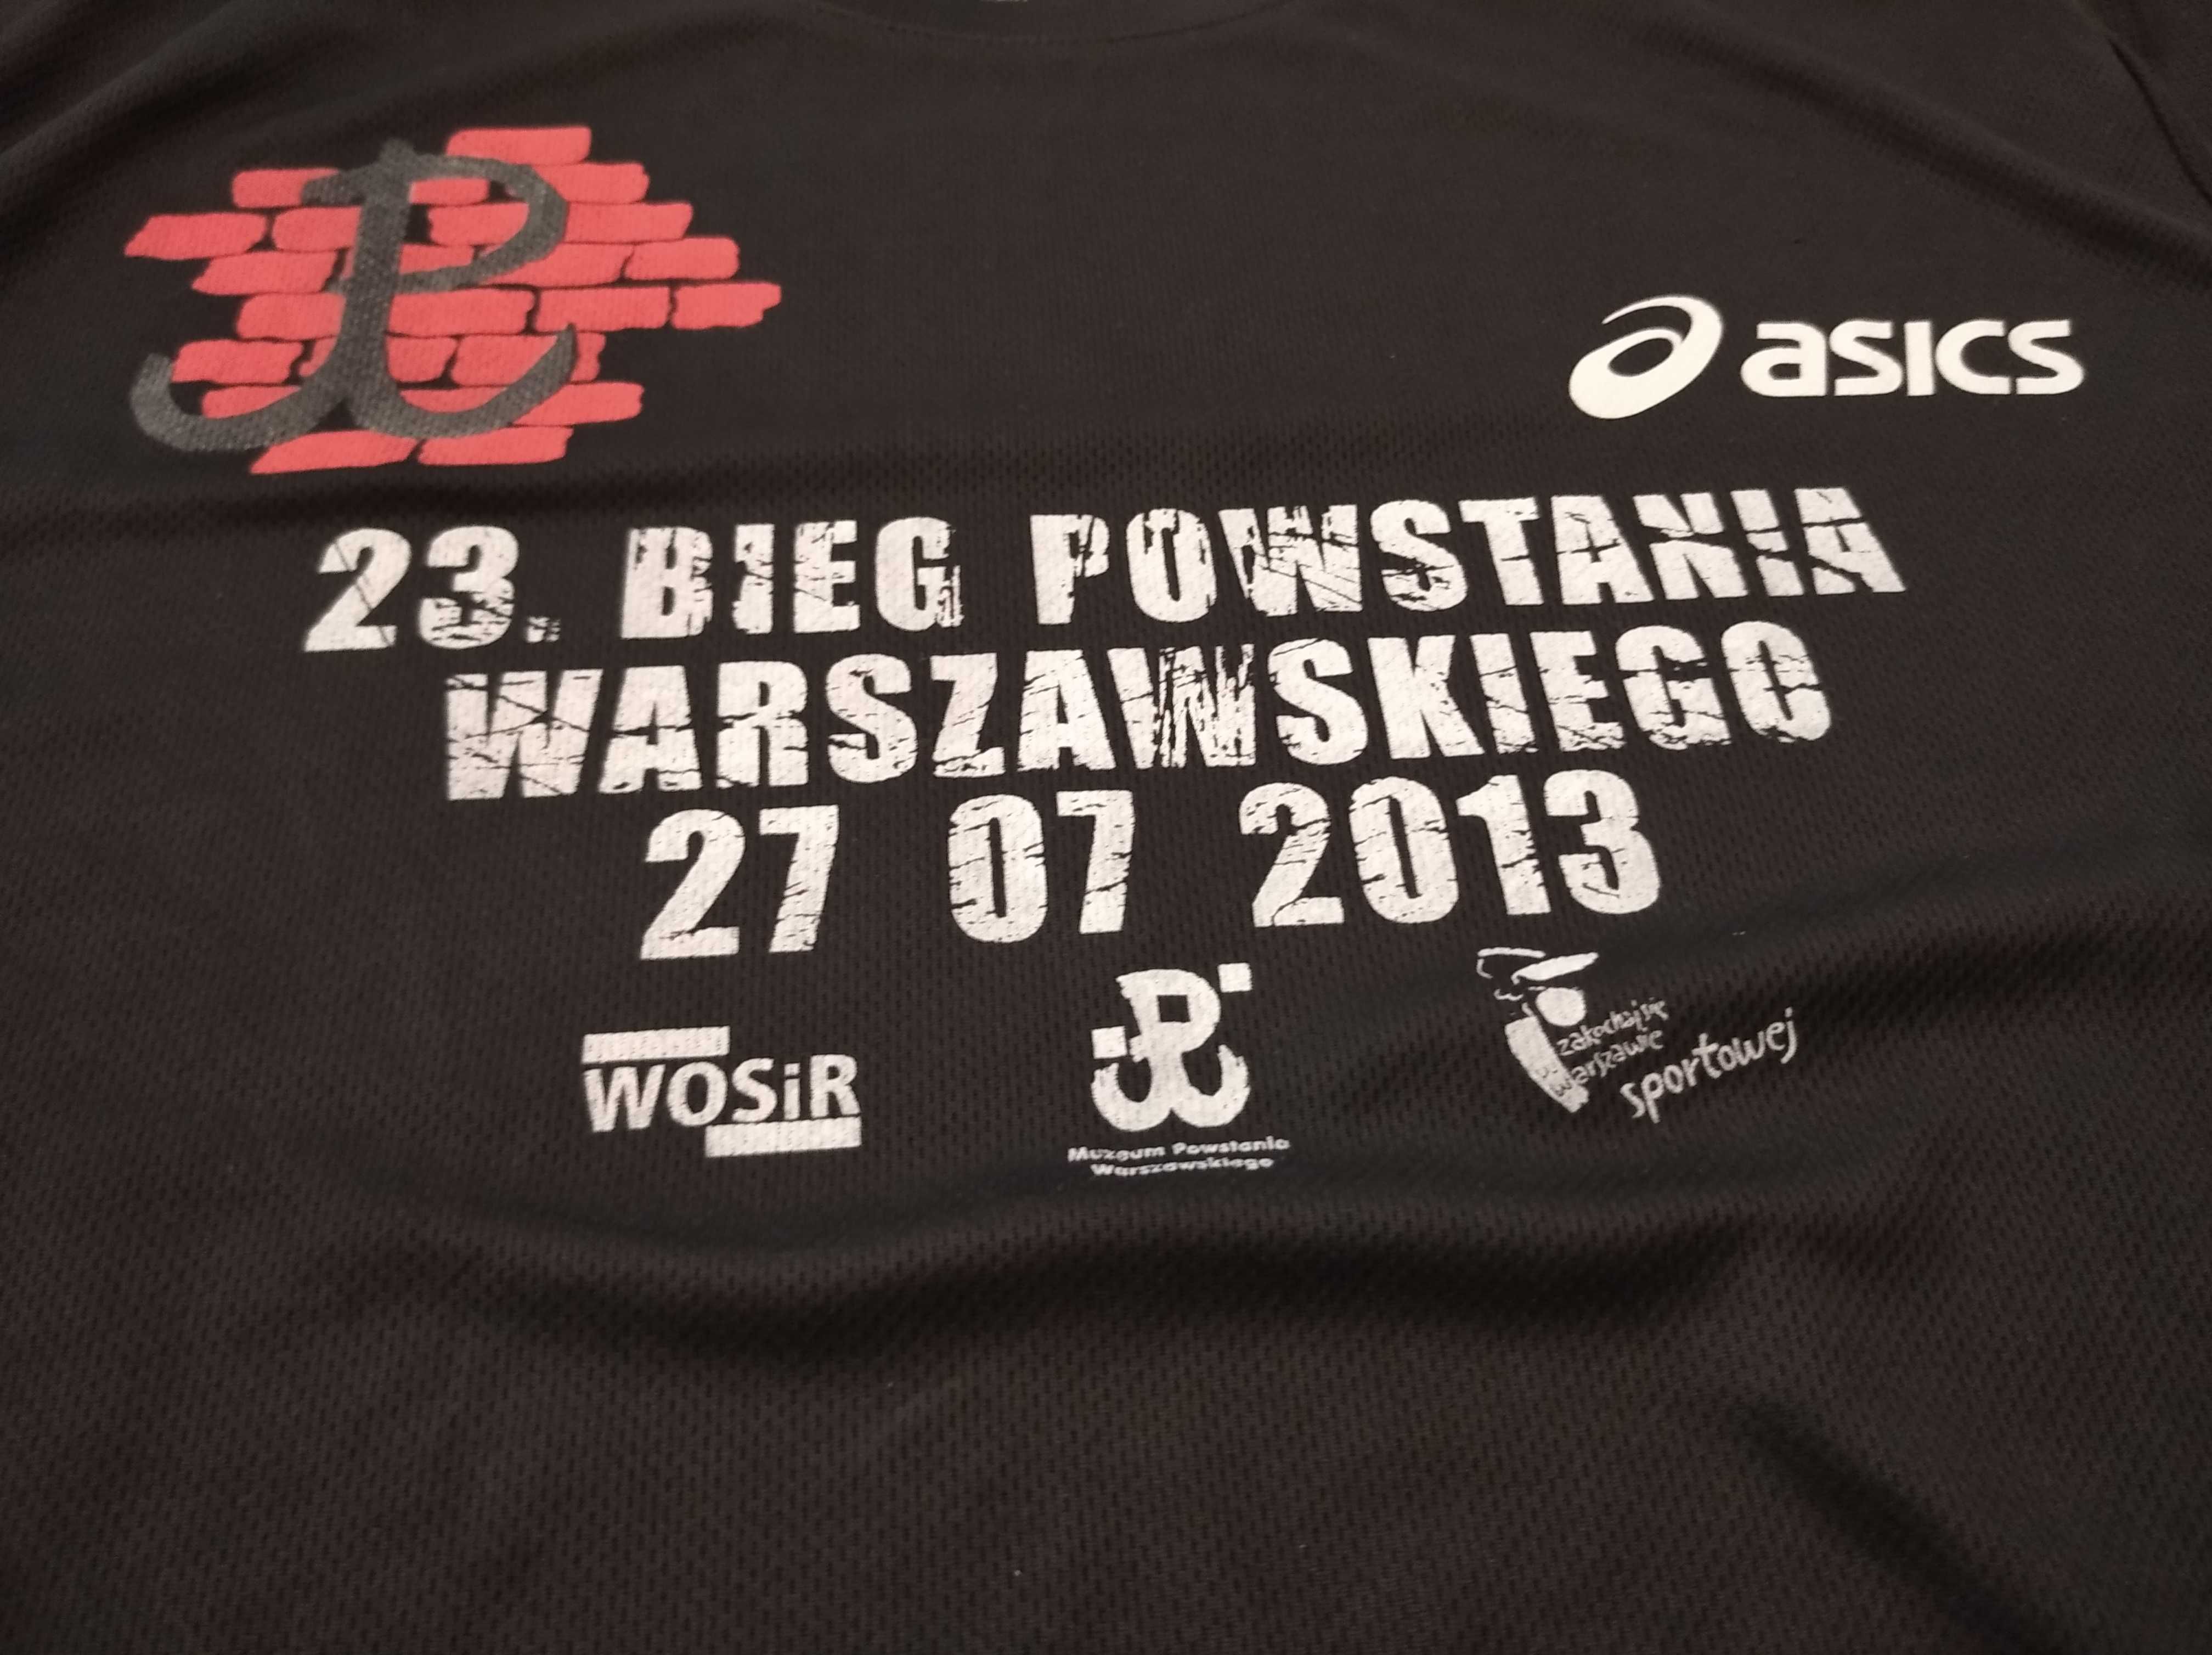 Koszulka Bieg Powstania Warszawskiego XXL Asics biegania sportowa